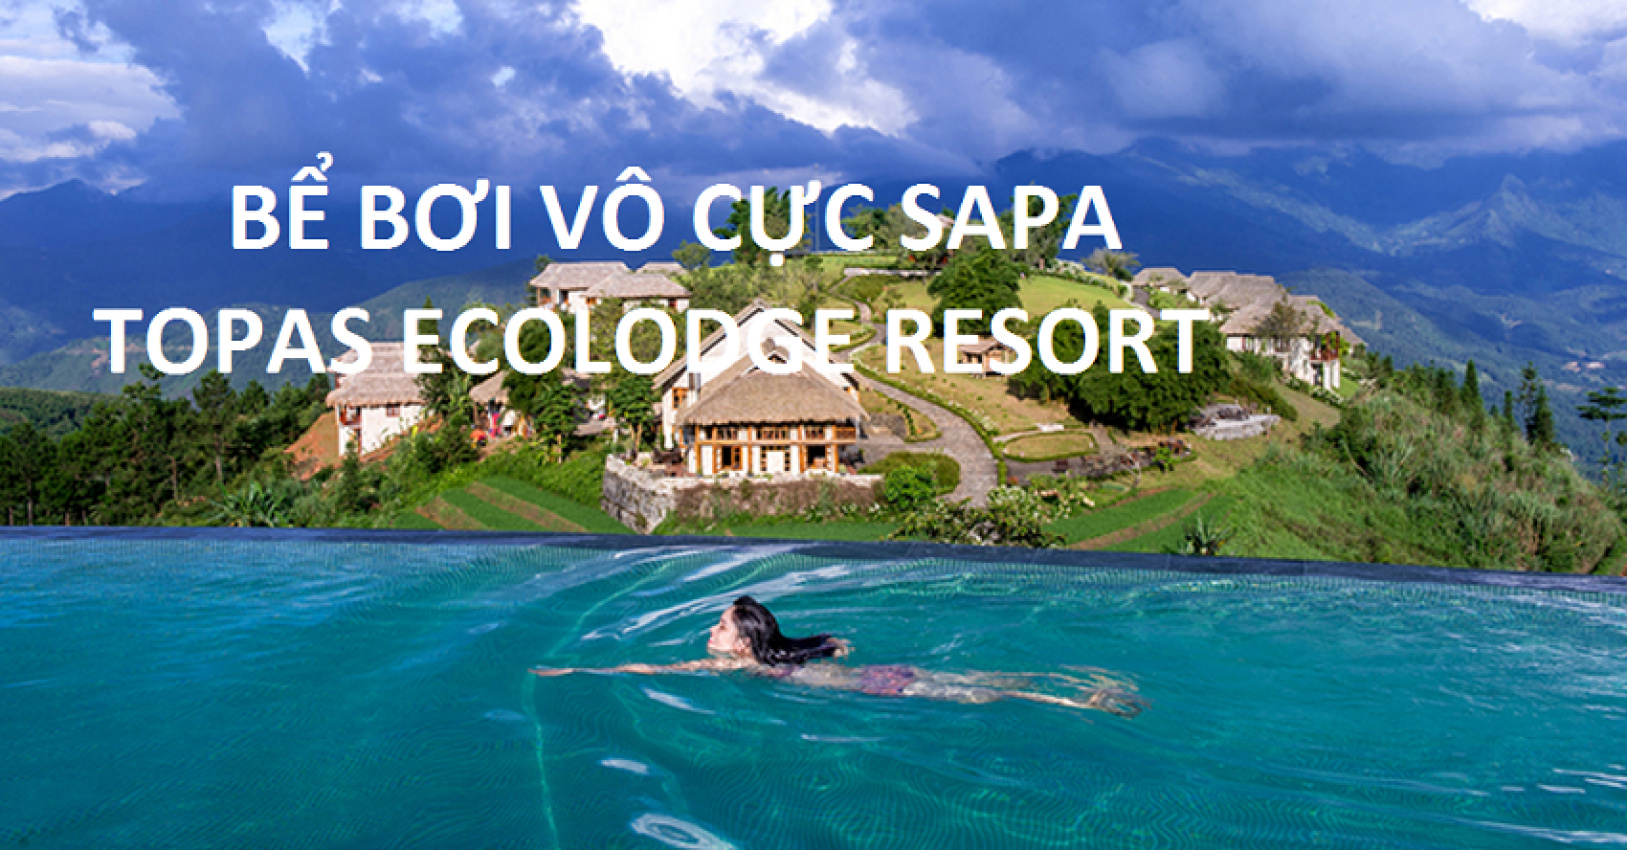 Lặn lội đến BỂ BƠI VÔ CỰC SAPA – Topas Ecolodge Resort!